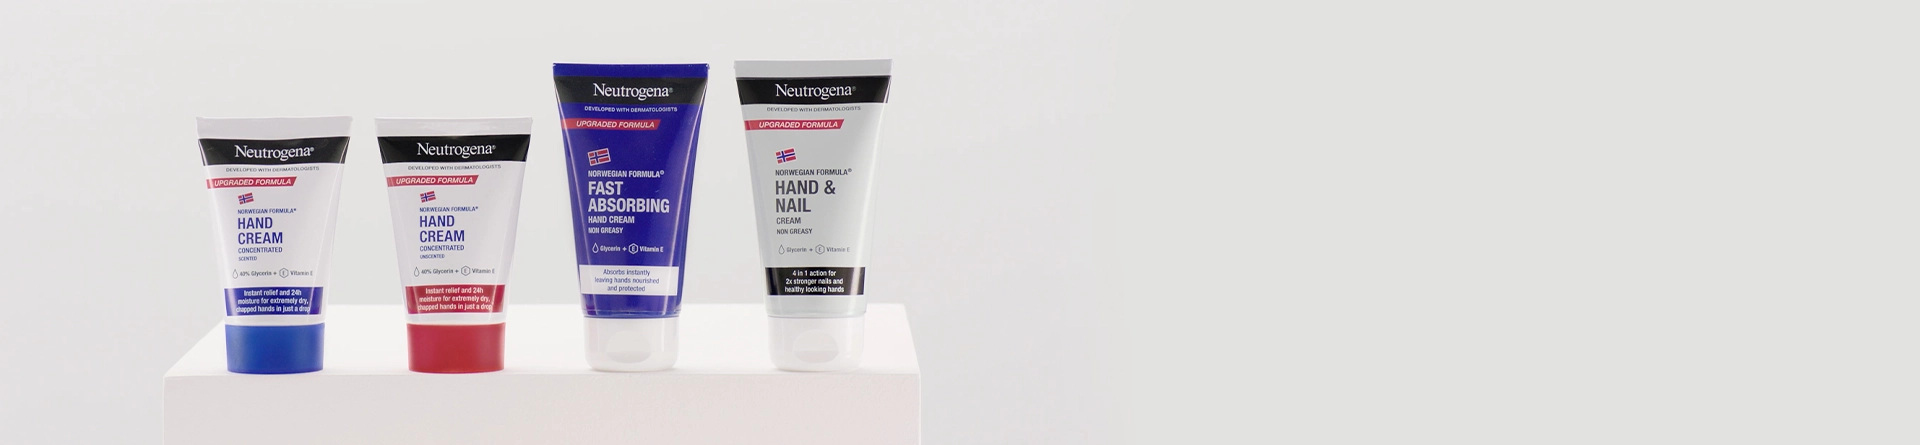 Neutrogena® Hand Cream on hand